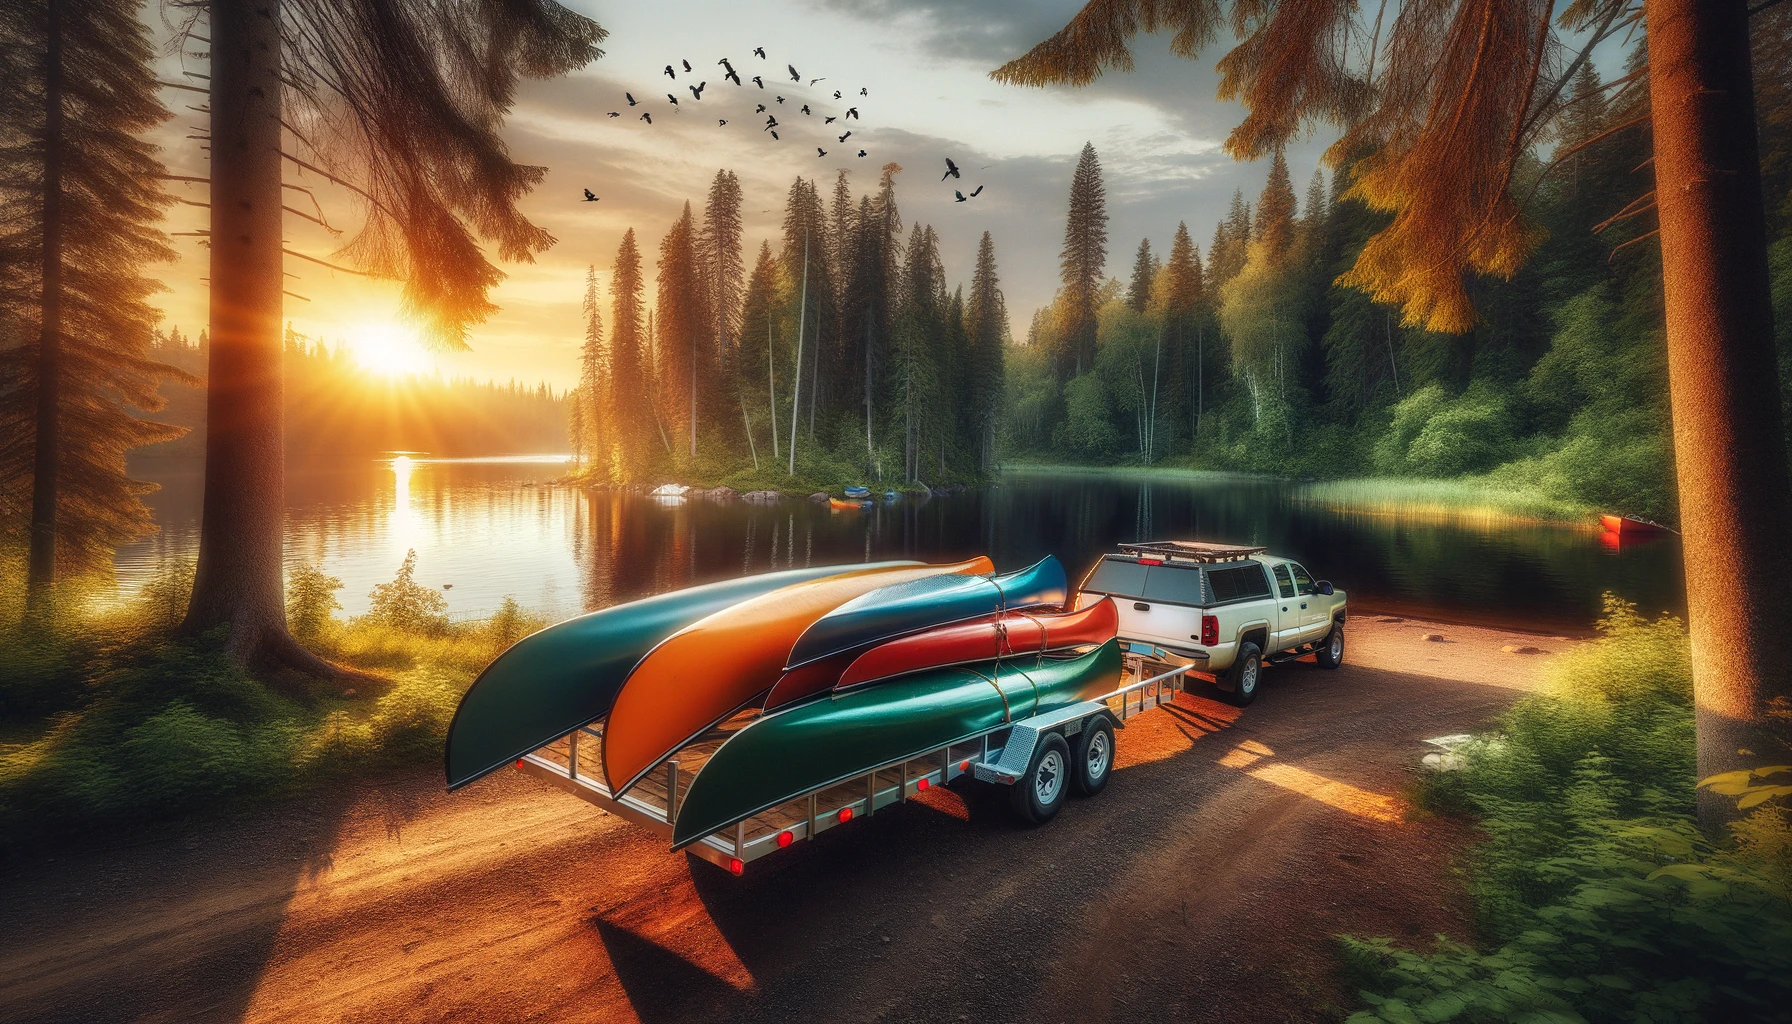 canoe trailer